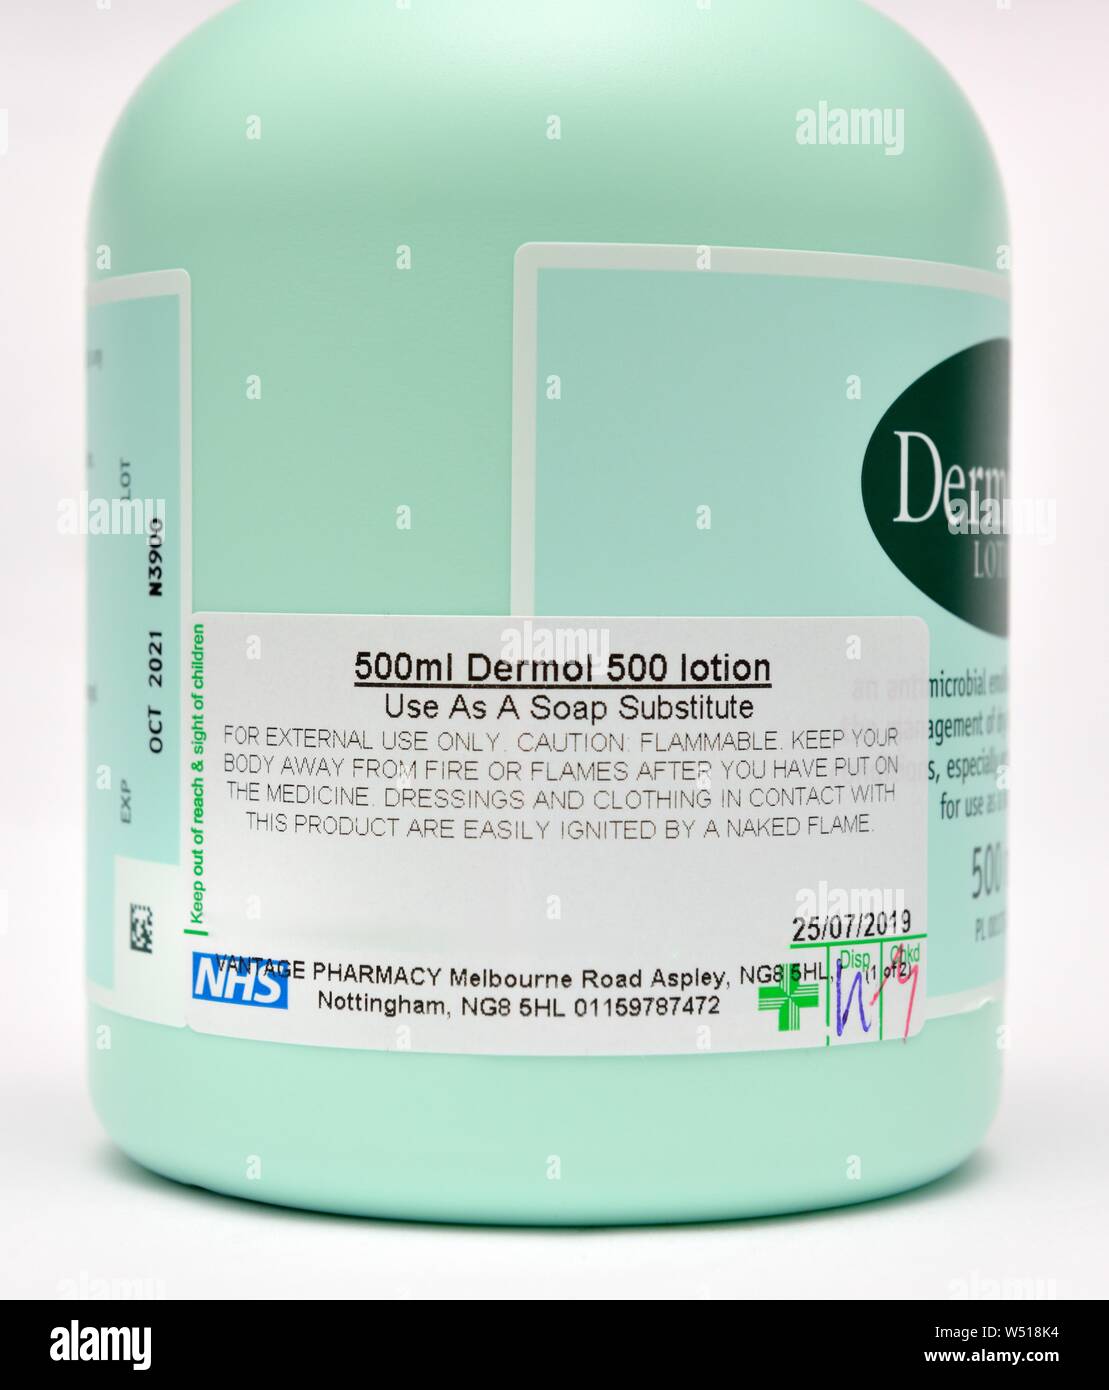 Dermol 500 lotion Banque de photographies et d'images à haute résolution -  Alamy